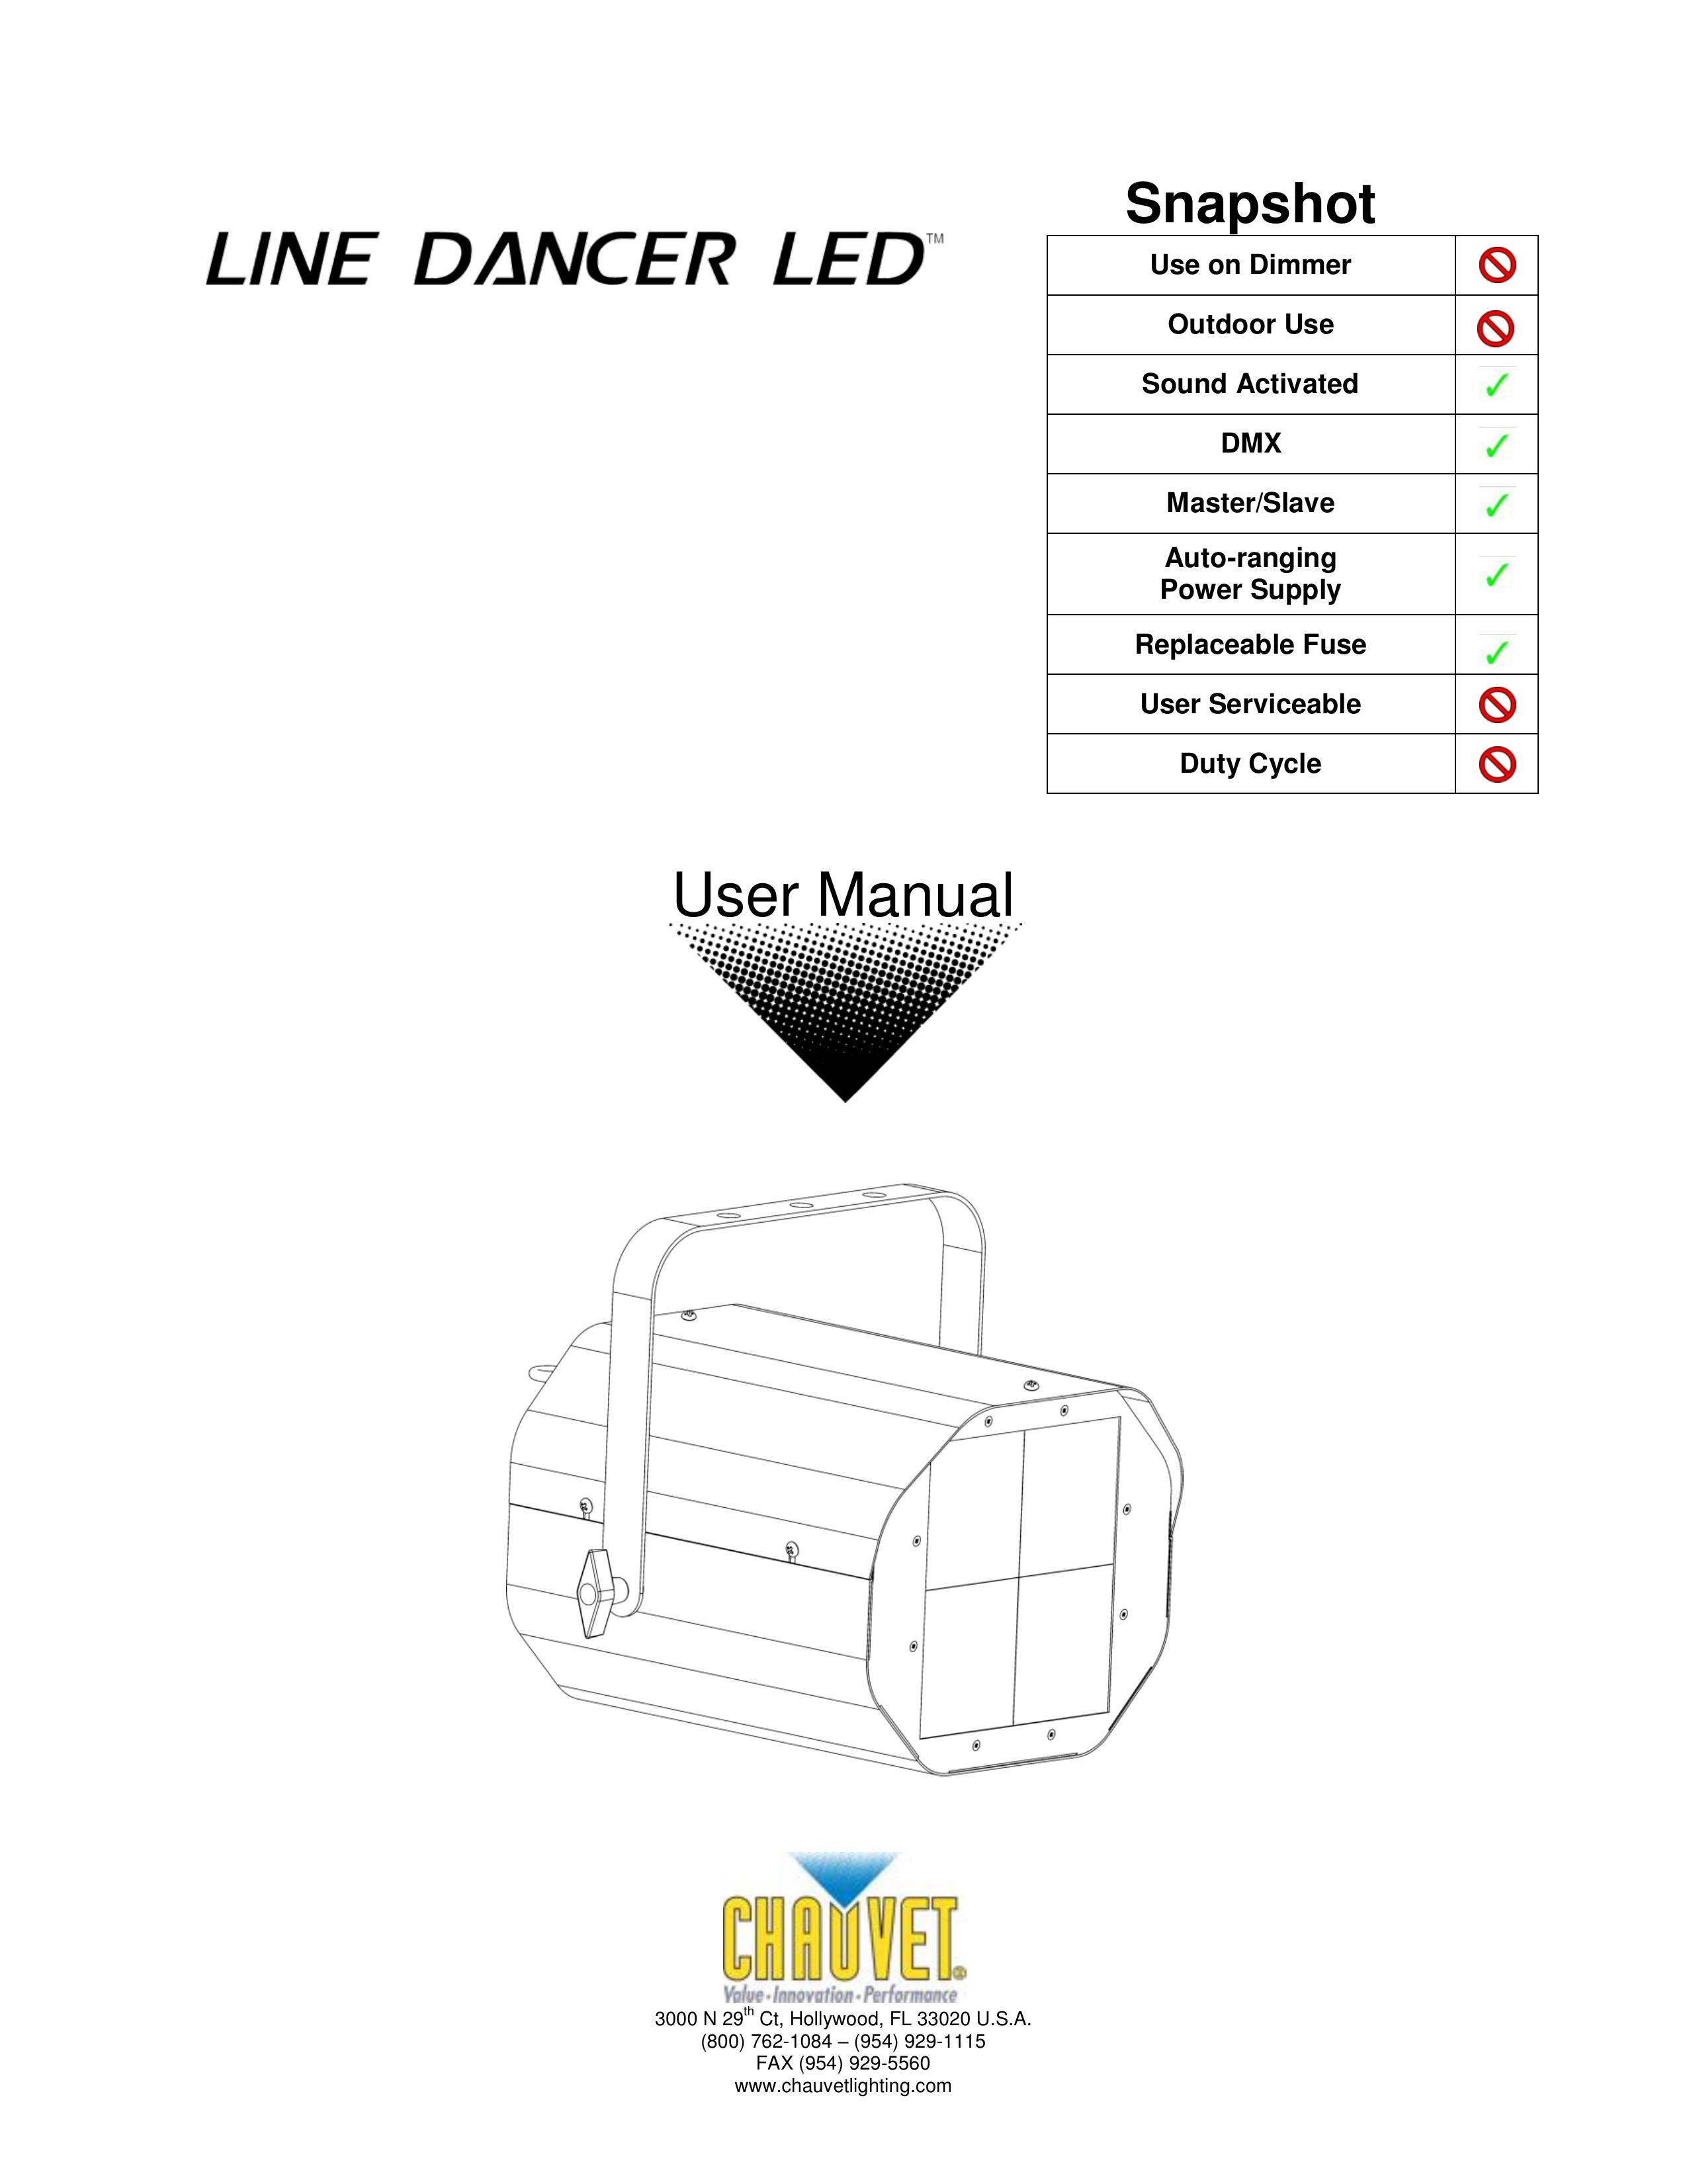 Chauvet Line Dancer LED Landscape Lighting User Manual